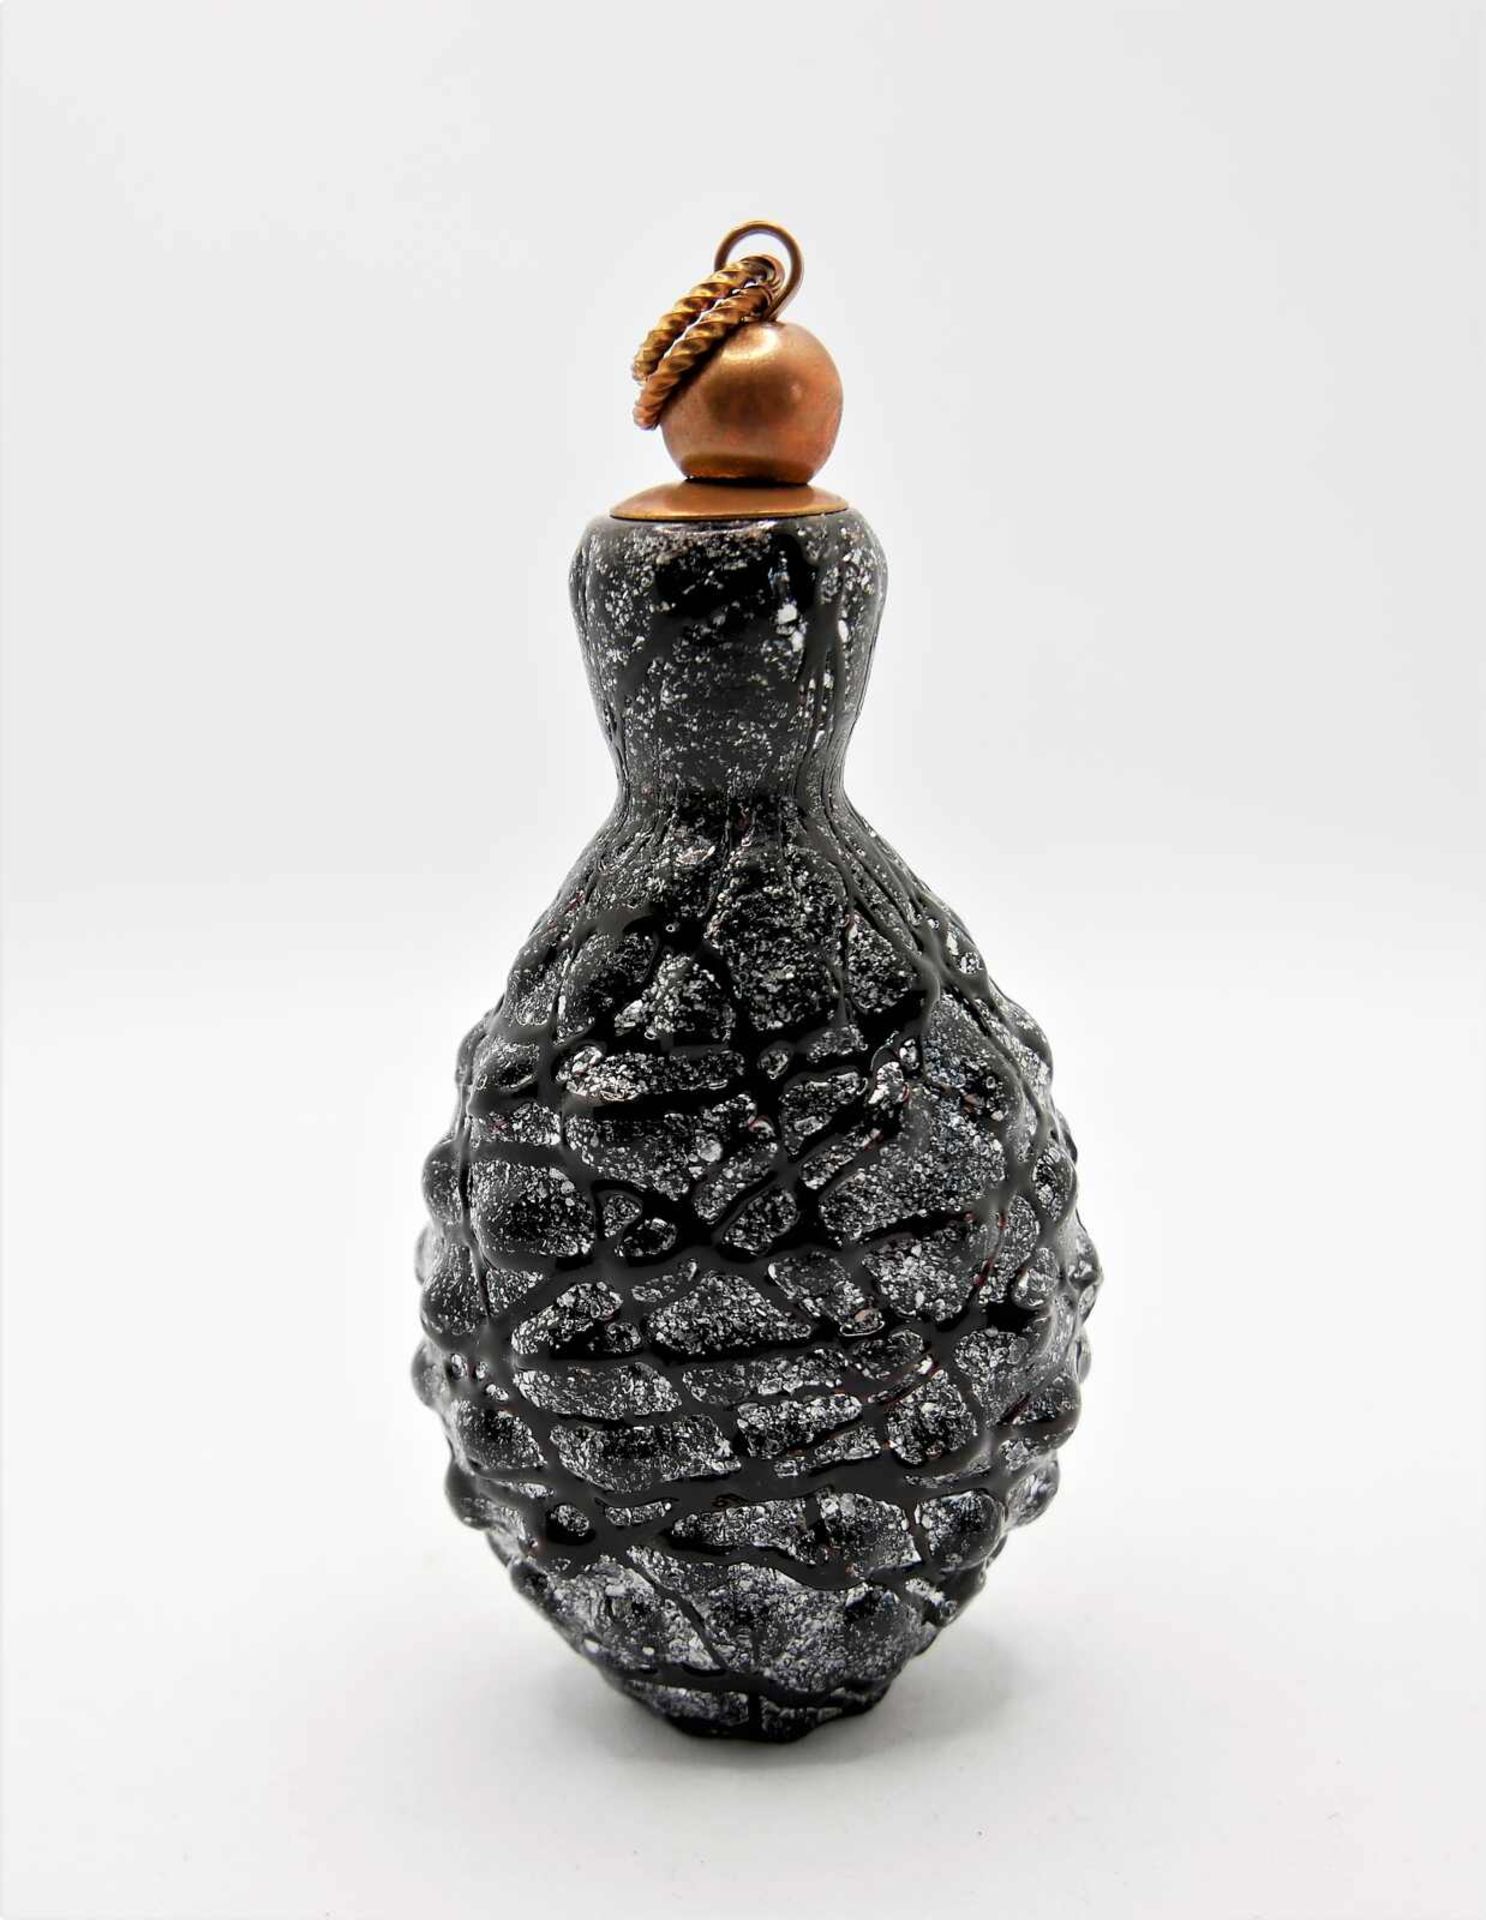 Schnupftabakflasche Glas aus Sammlung, Bixl, schwarz/silber, mit Stöpsel. Bayrischer Wald. Höhe c